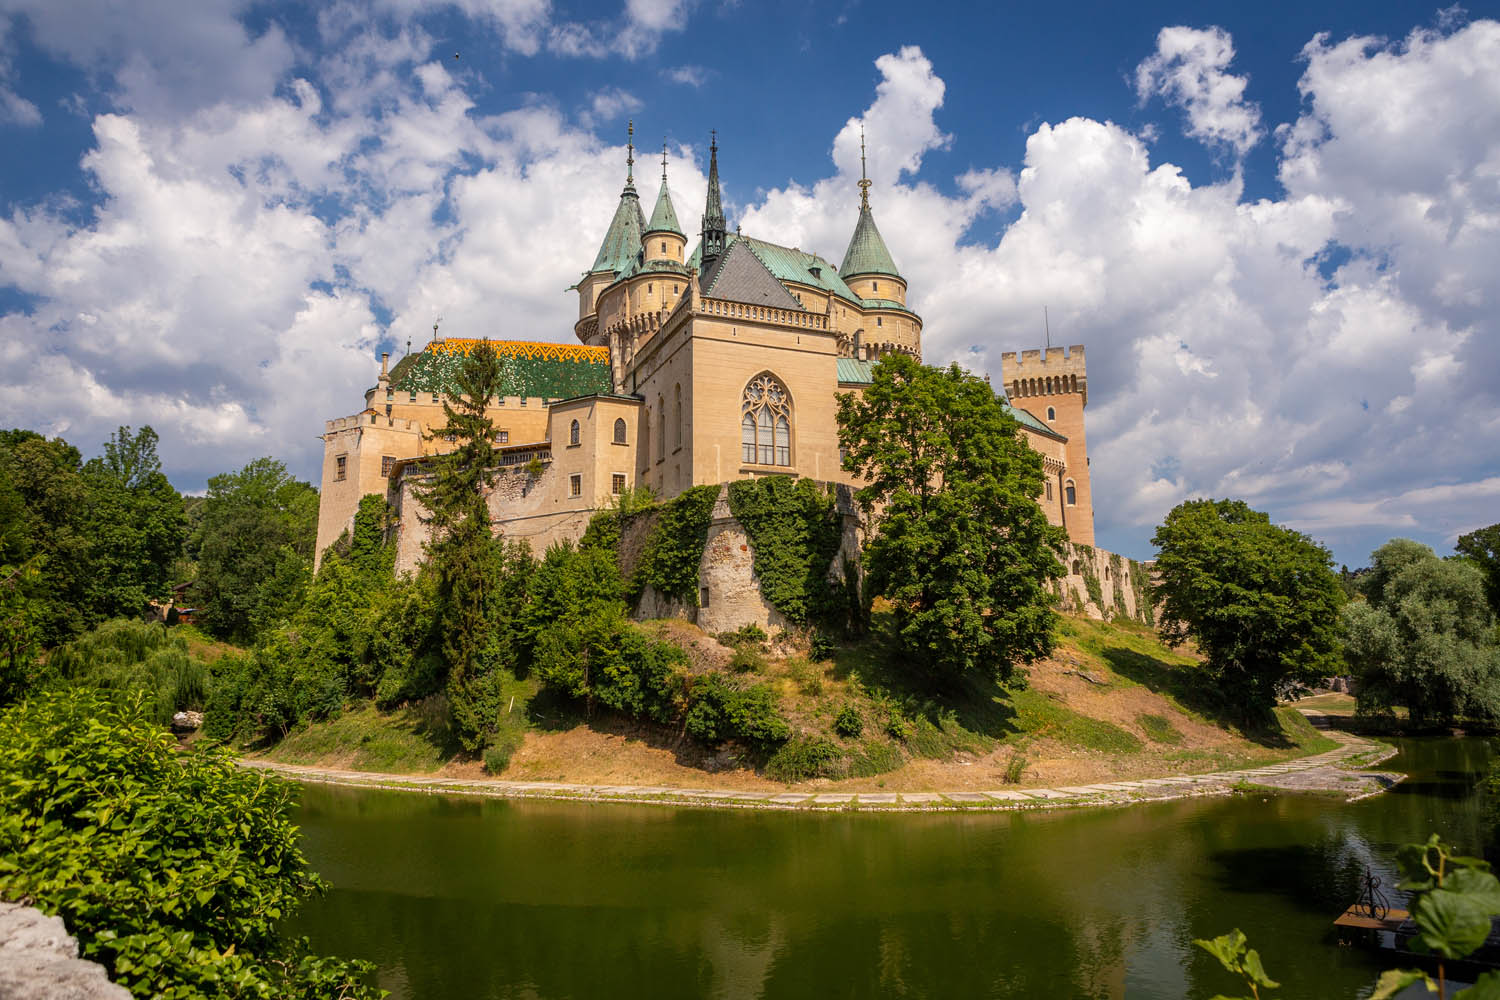 Het sprookjesachtige kasteel Bojnice in Slowakije met slotgracht, torentjes en blauwe lucht